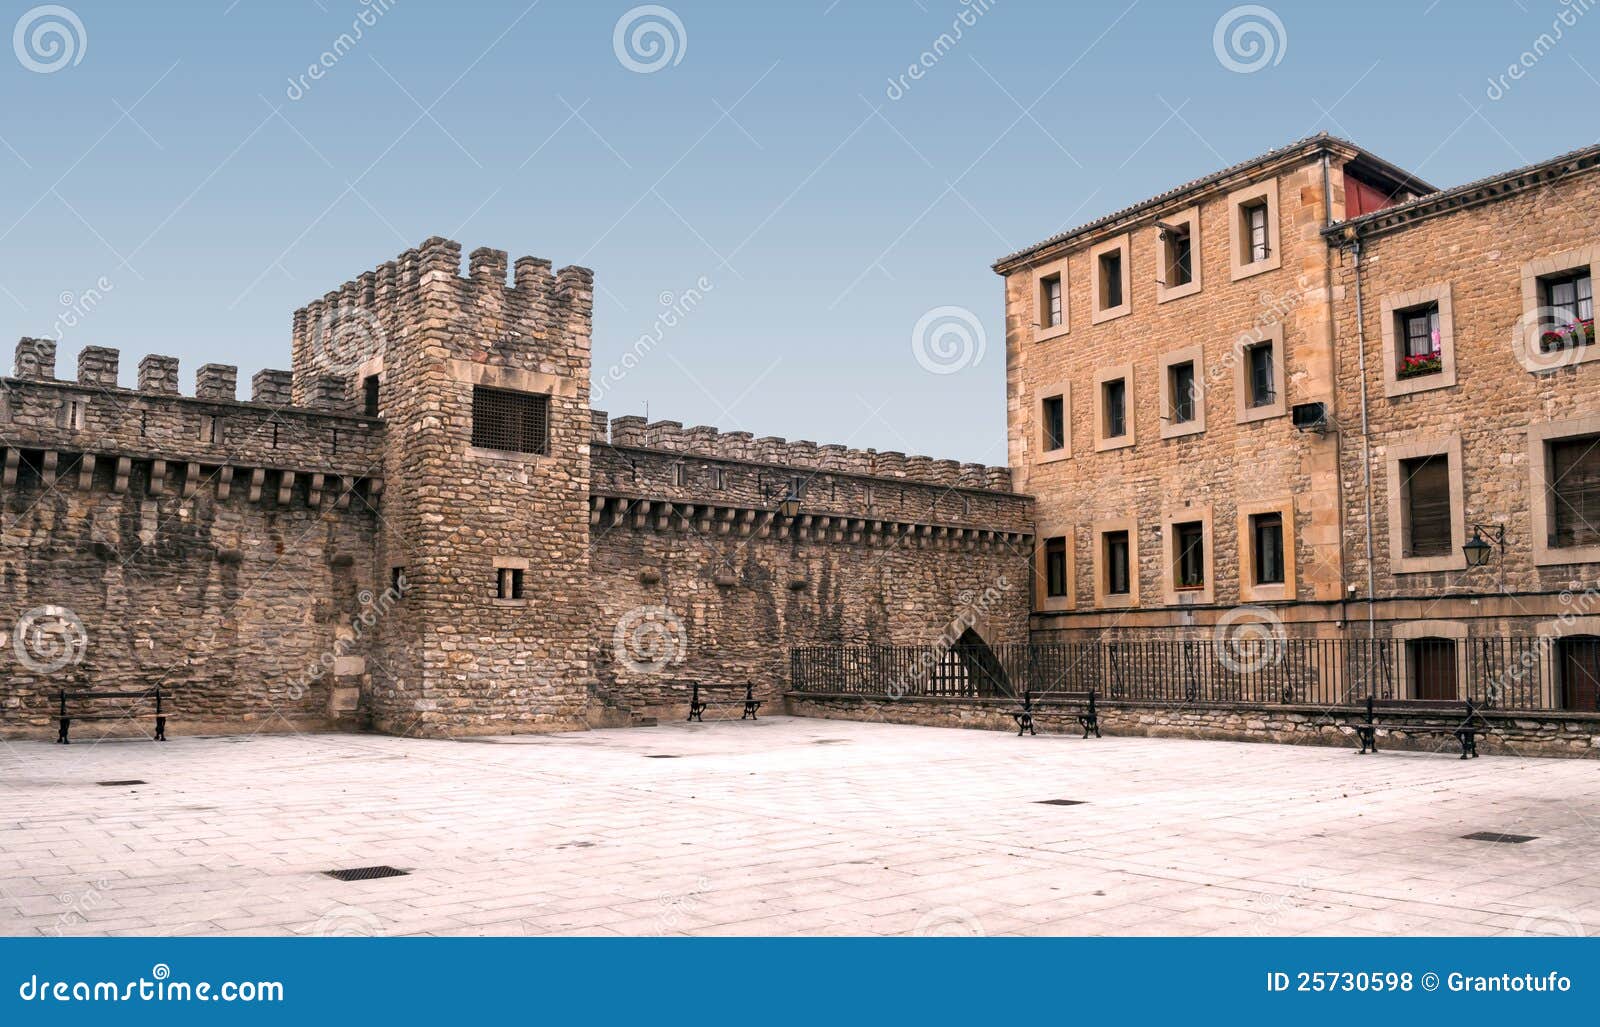 стена двора замока. стародедовский двор города замока здания одна другая сторона s распологает испанскую стену vitoria